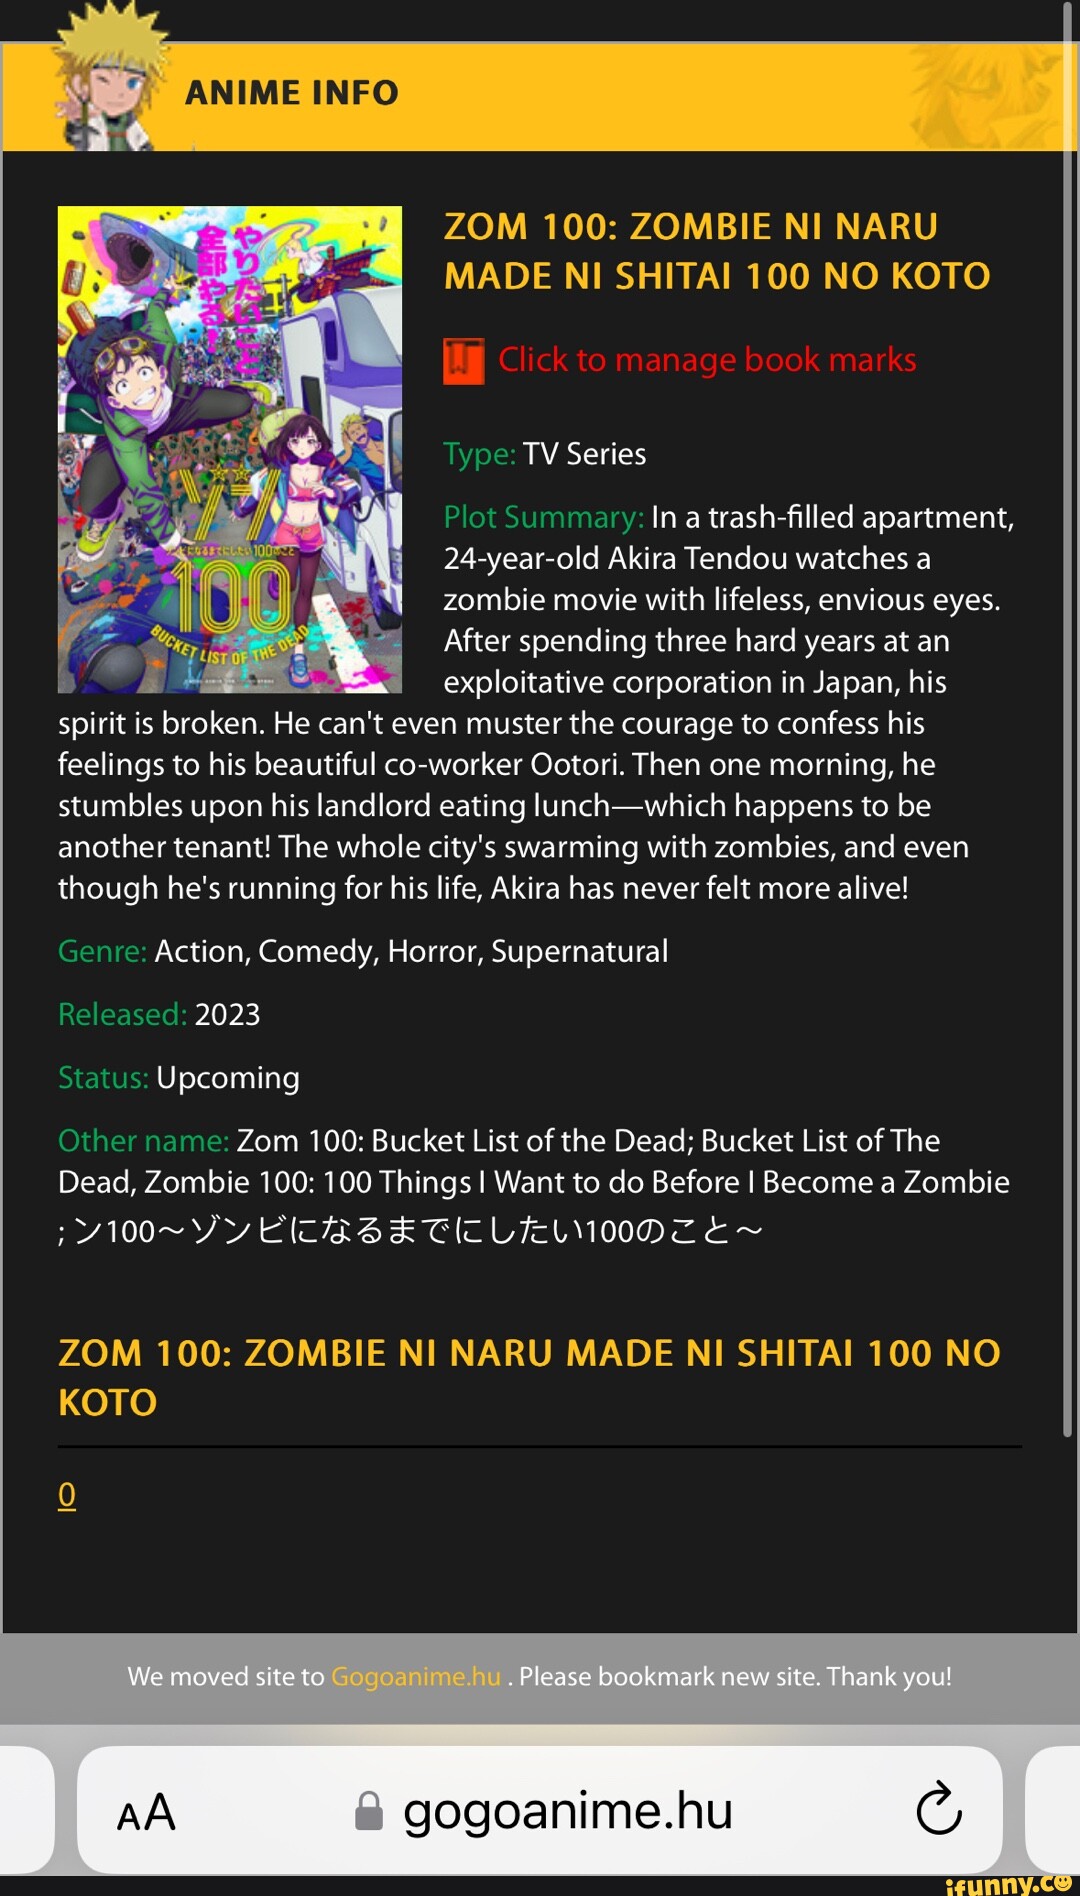 TV Anime Zom 100: Zombie ni Naru made ni Shitai 100 no Koto x The